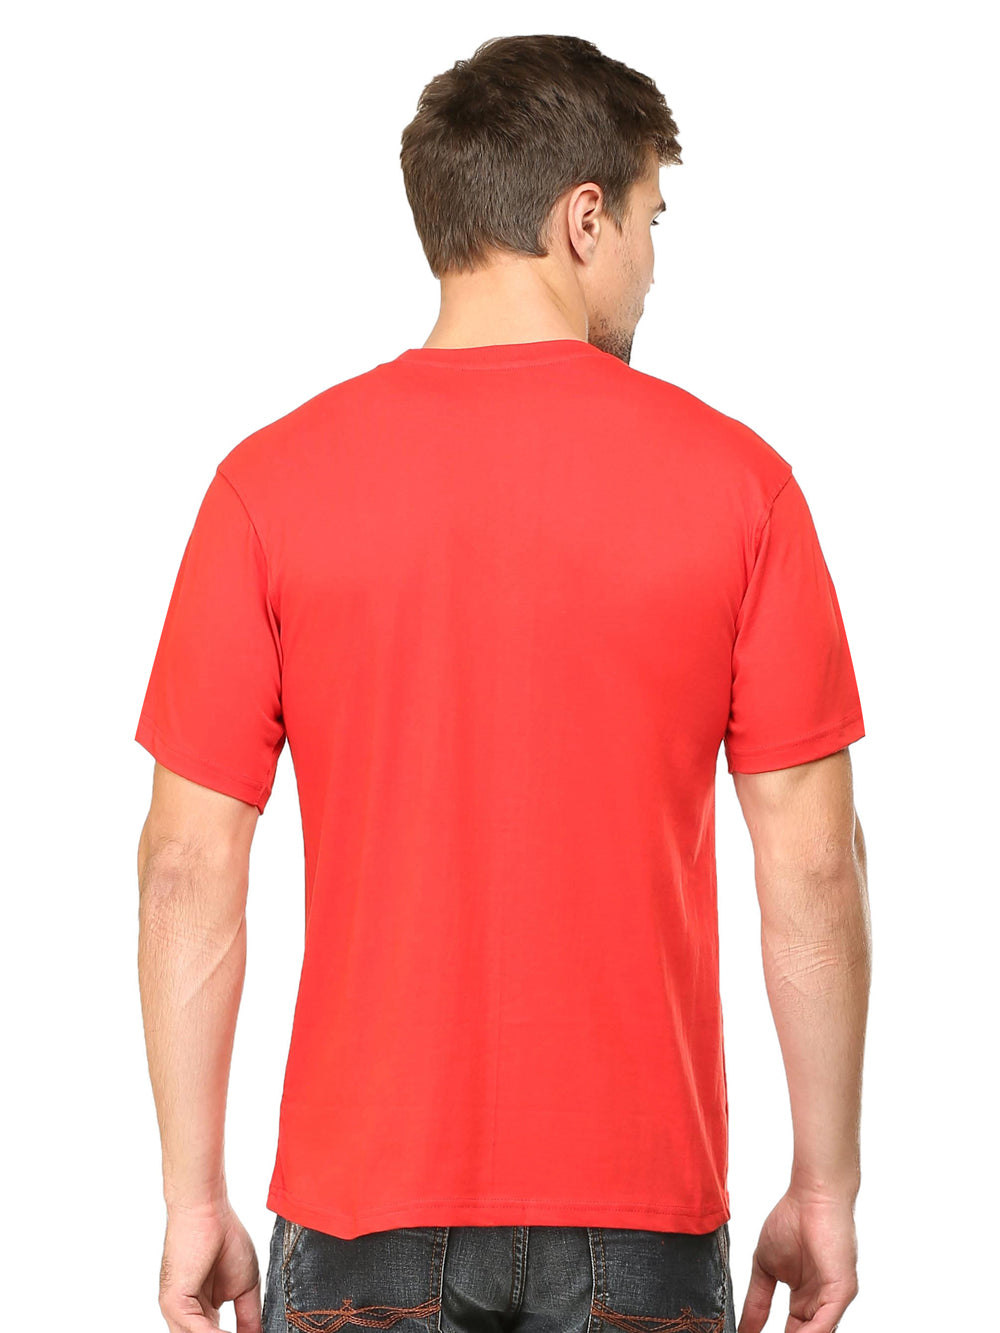 Solids : Premium Red Unisex T -shirt